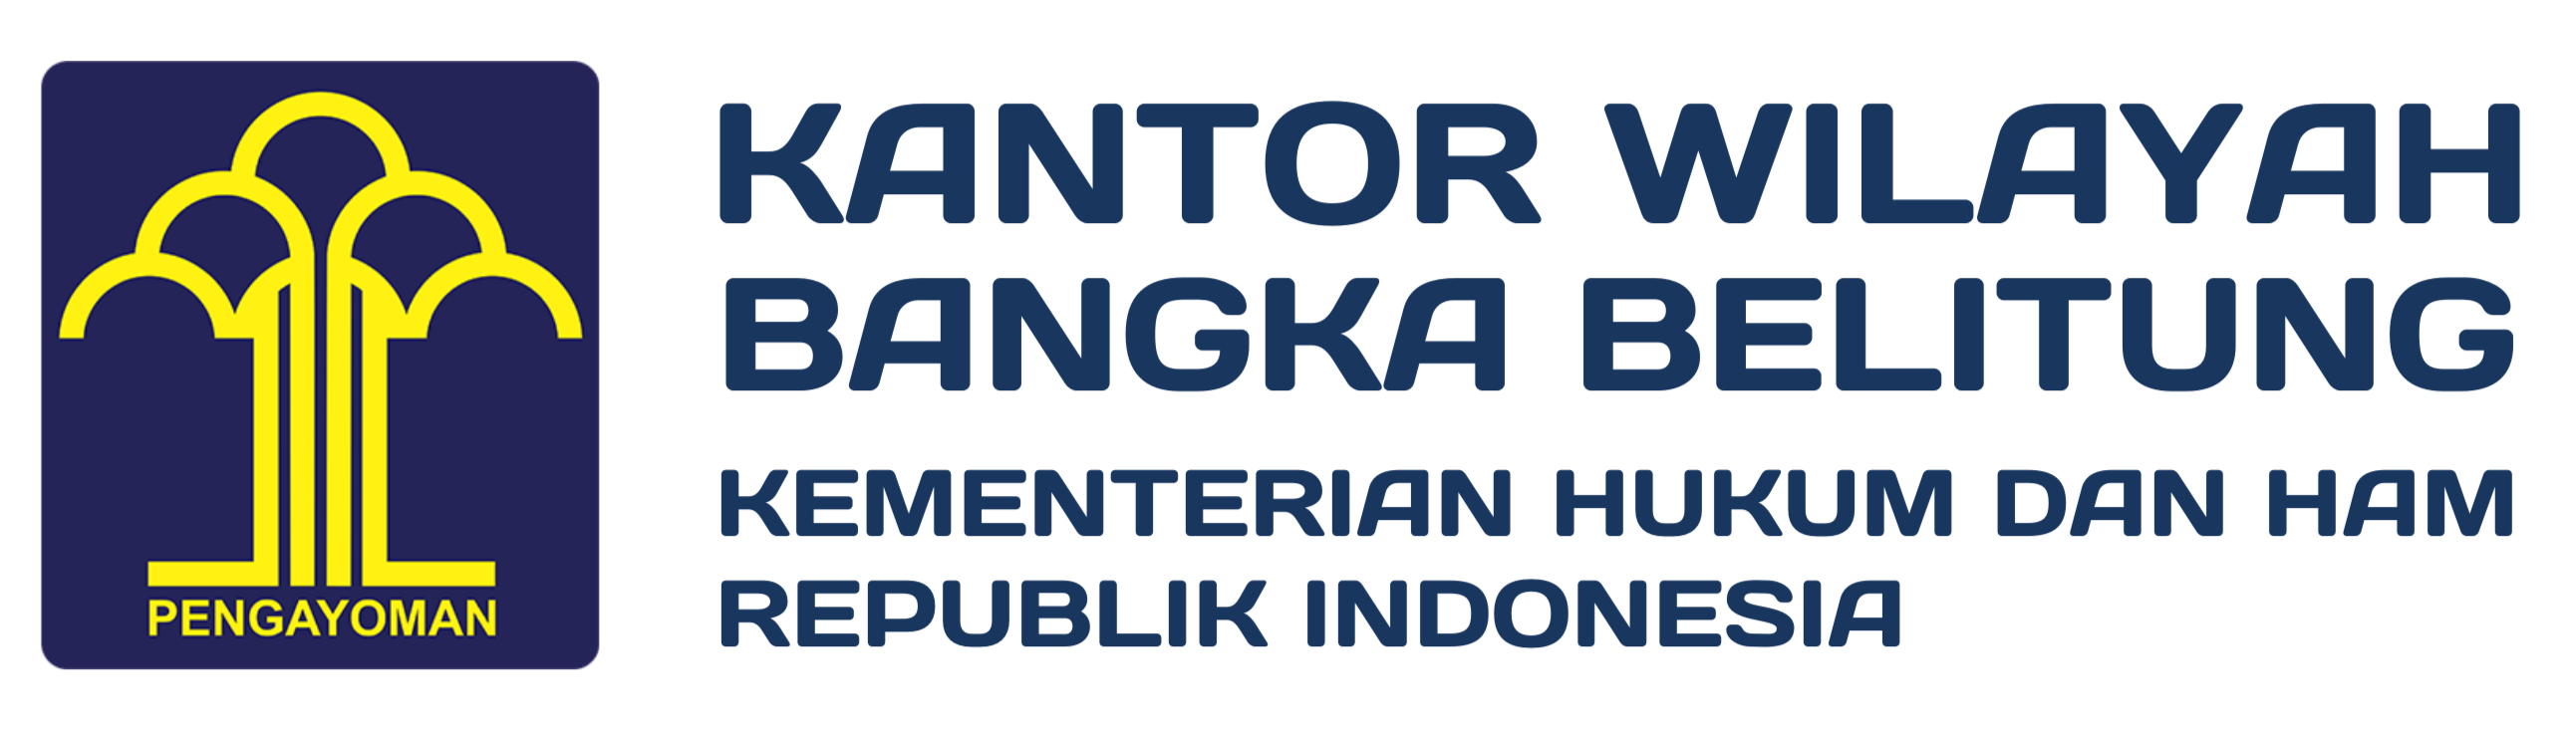 Kantor Wilayah Bangka Belitung  | Kementerian Hukum dan HAM Republik Indonesia